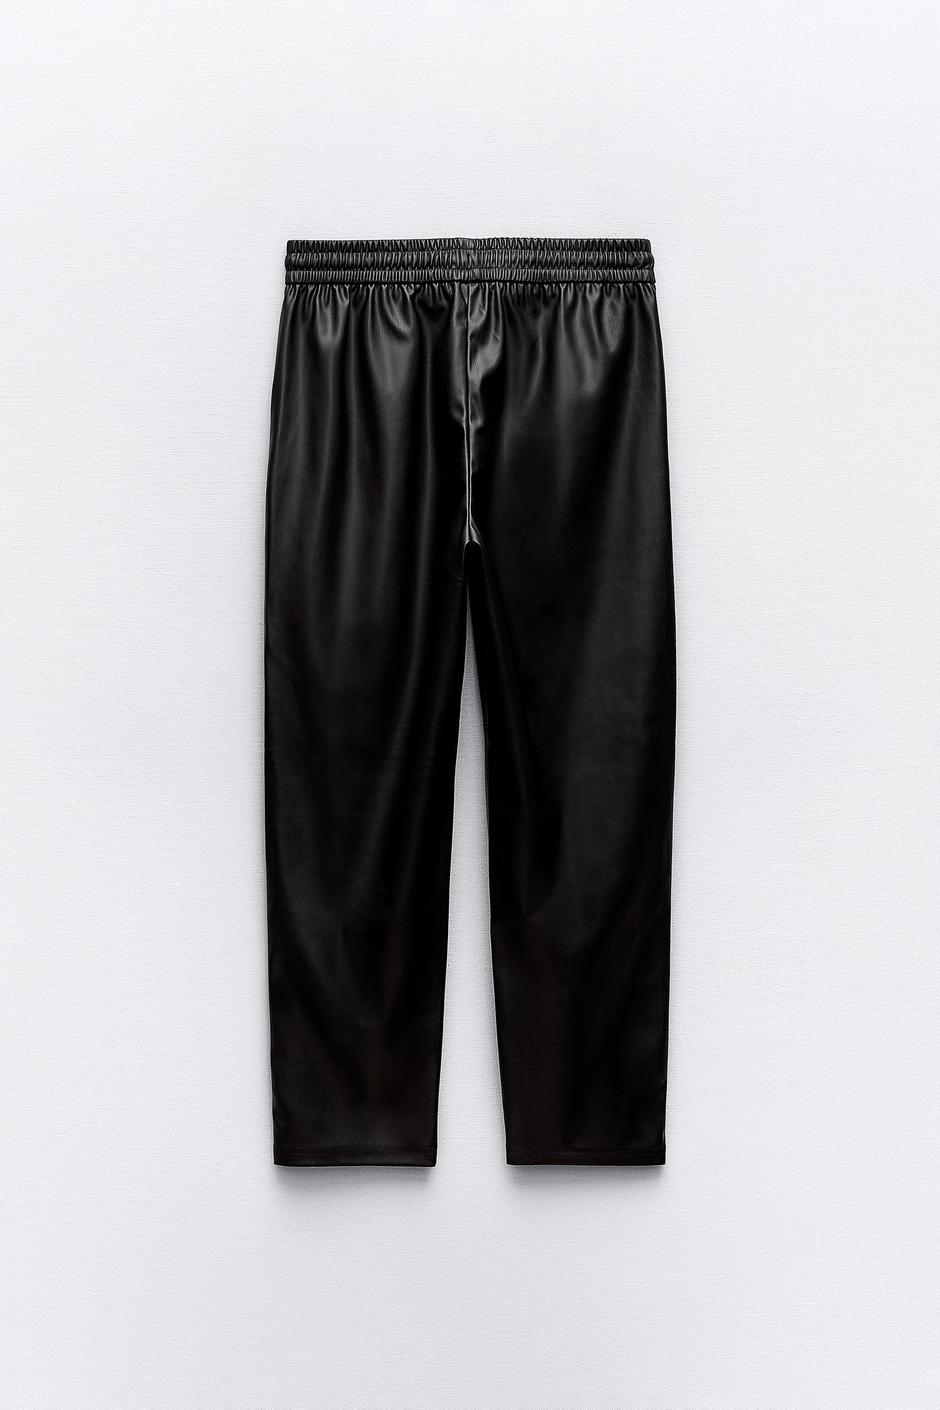 Foto: Zara, hlače od umjetne kože (22,95 eura) | Autor: 